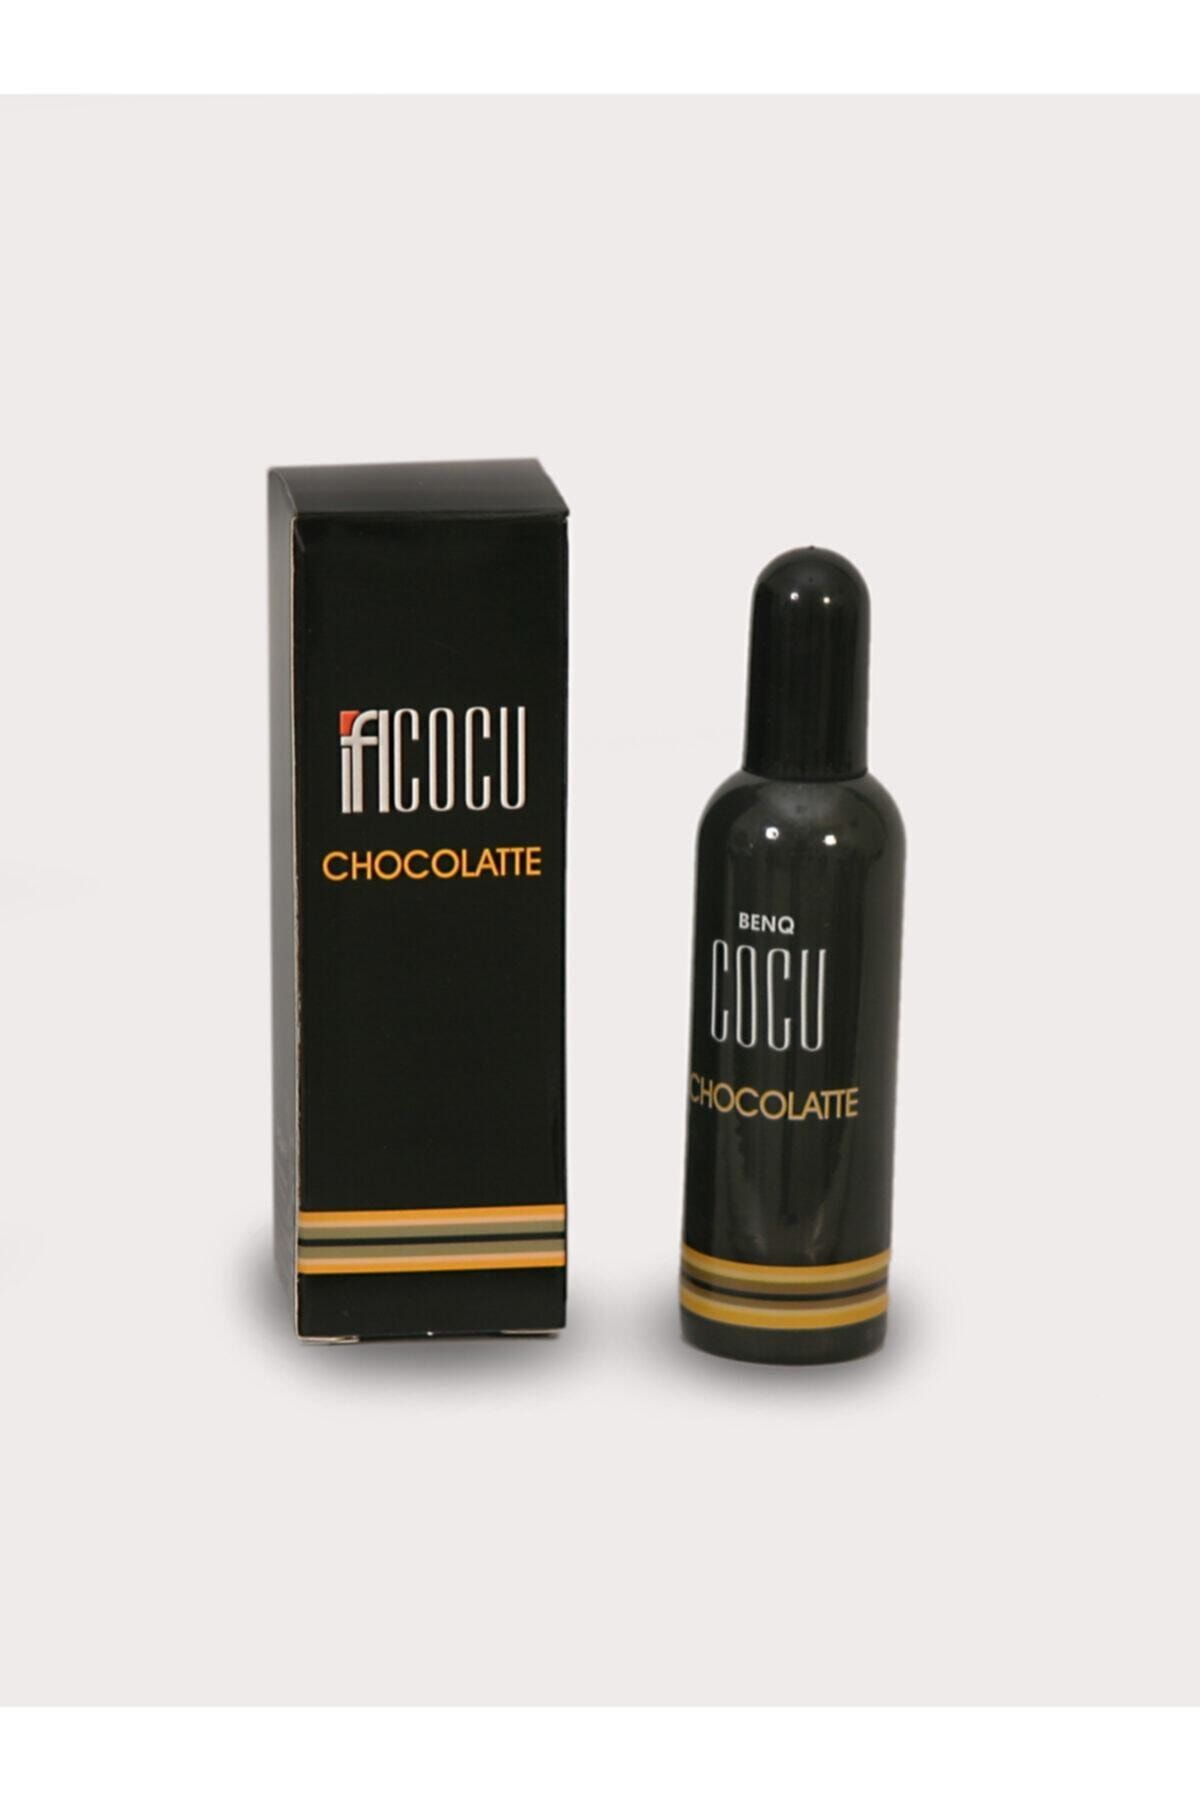 BENQ Cocu Chocolatte Parfüm